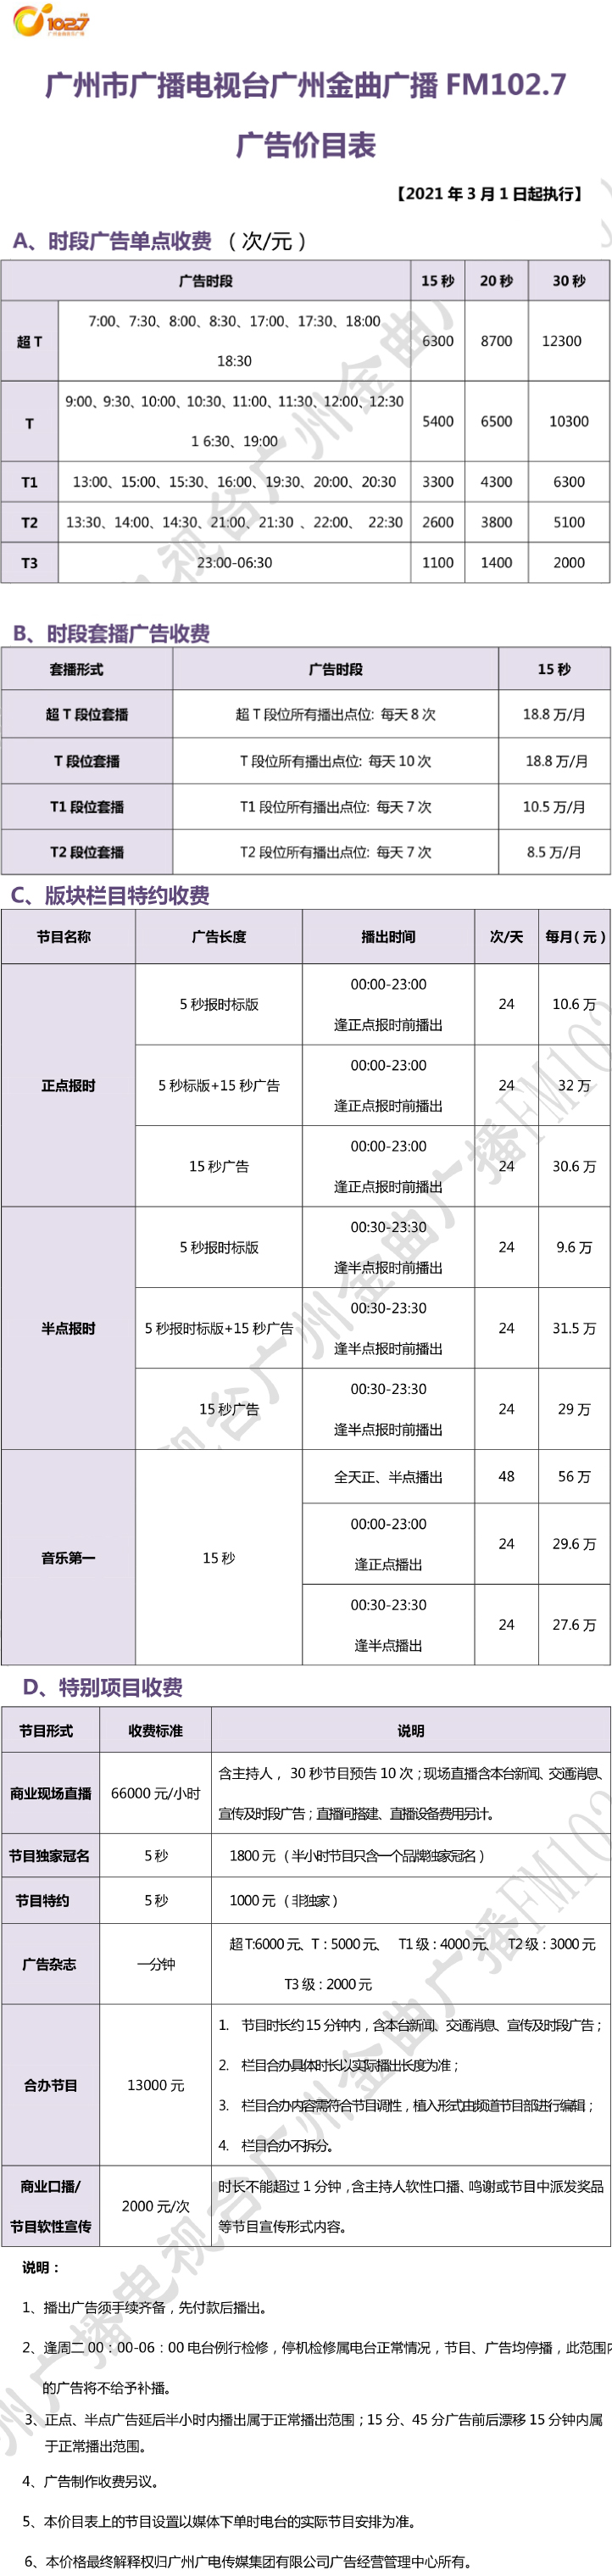 2021广州人民广播电台金曲广播102.7广告报价表.jpg